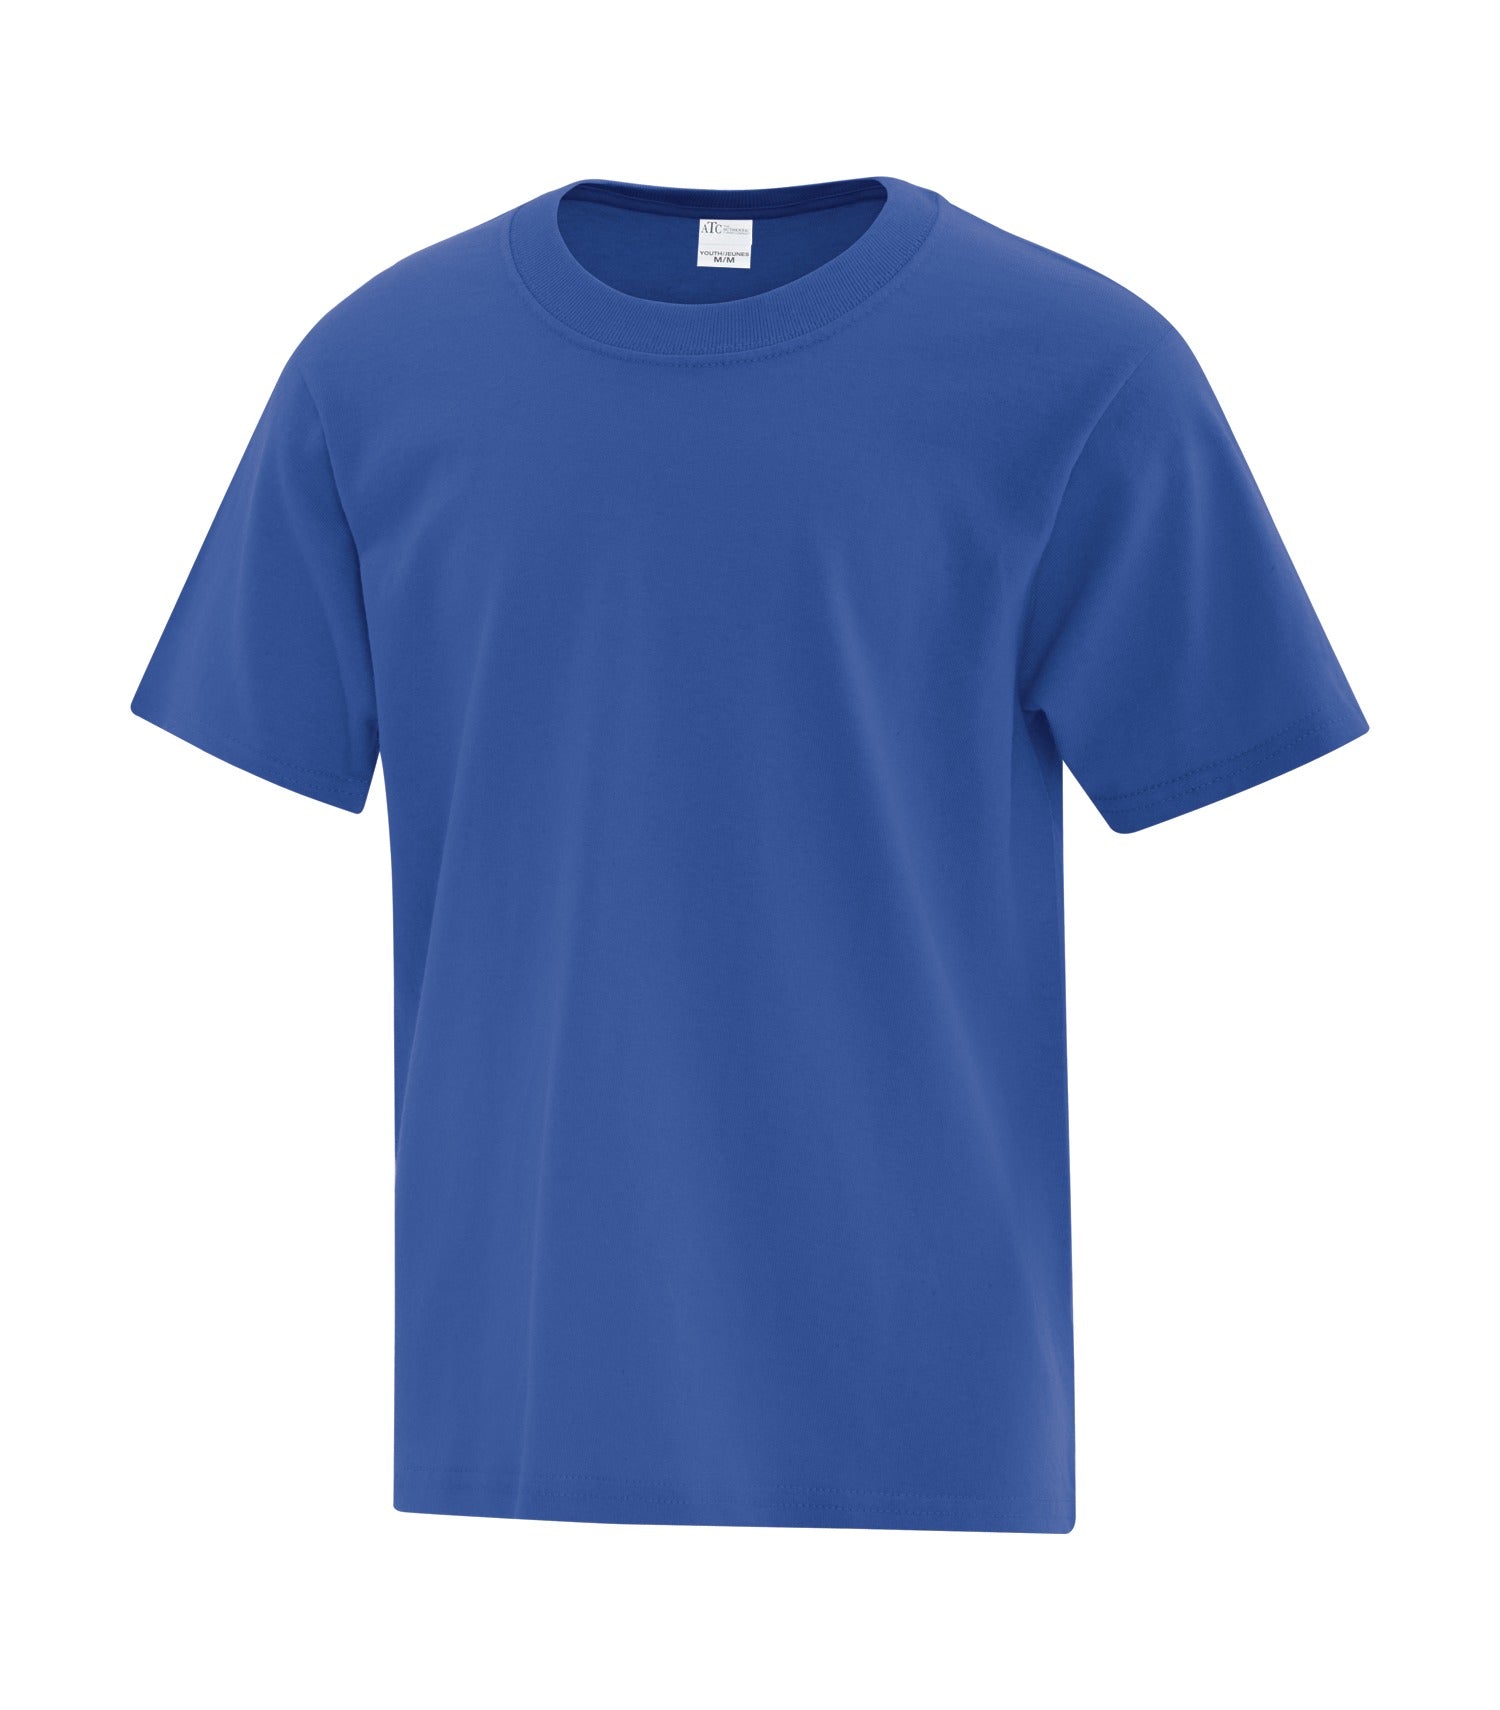 Navy Blue Cotton T-shirt 